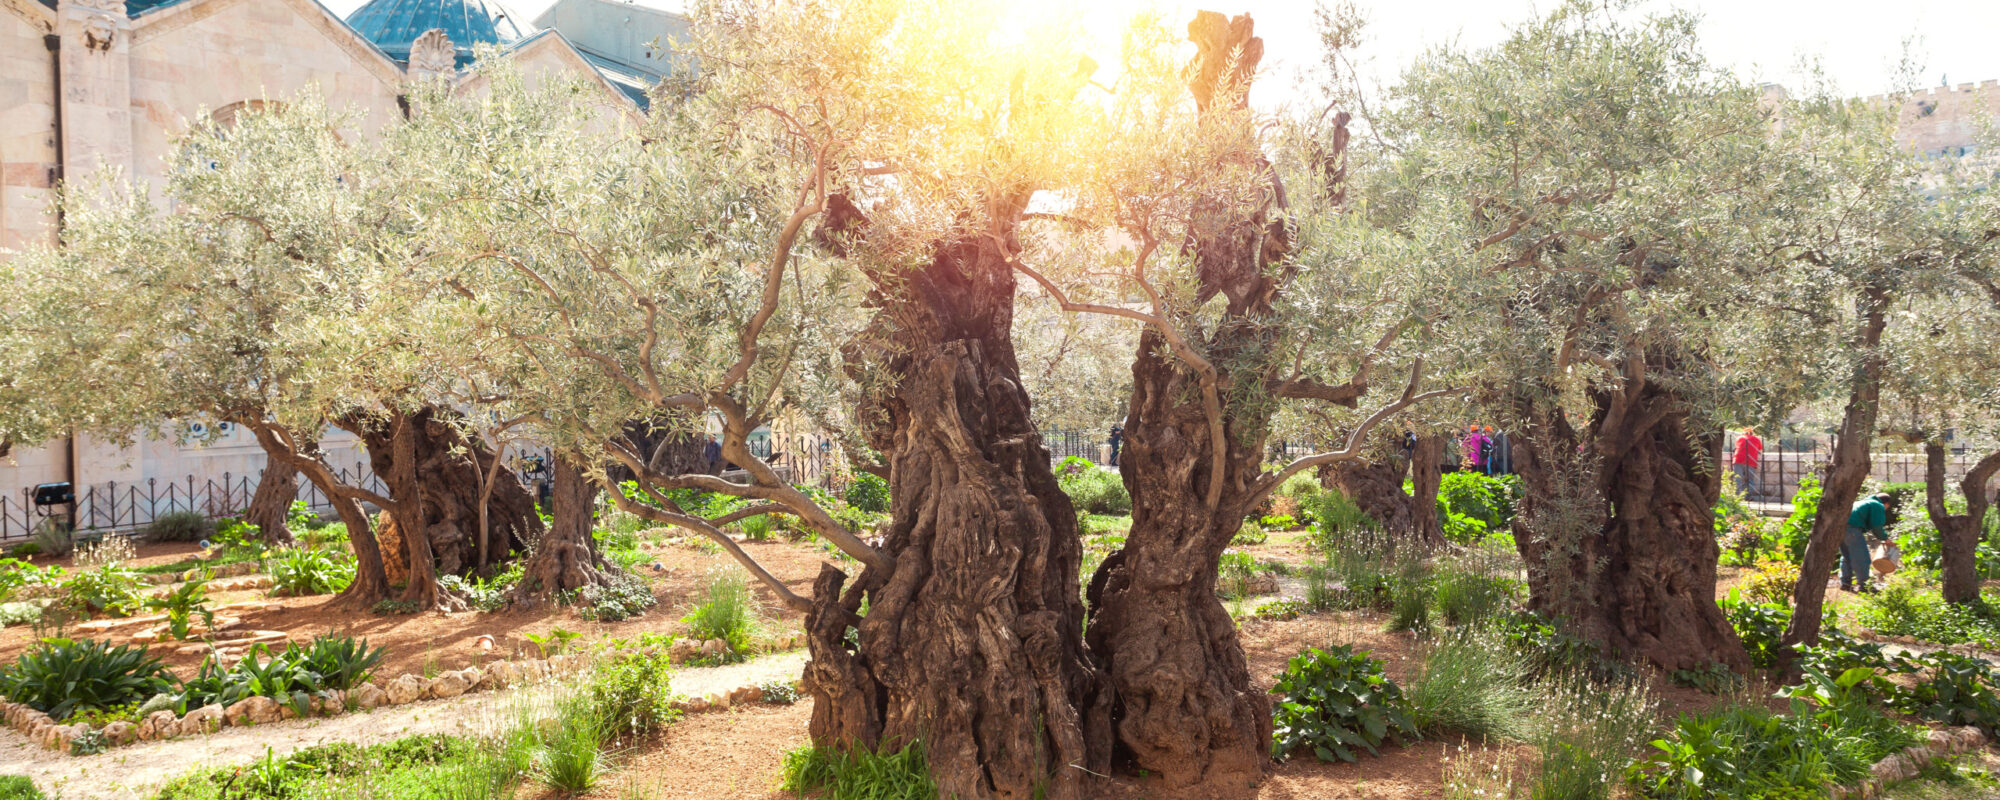 Olivengarten in Israel